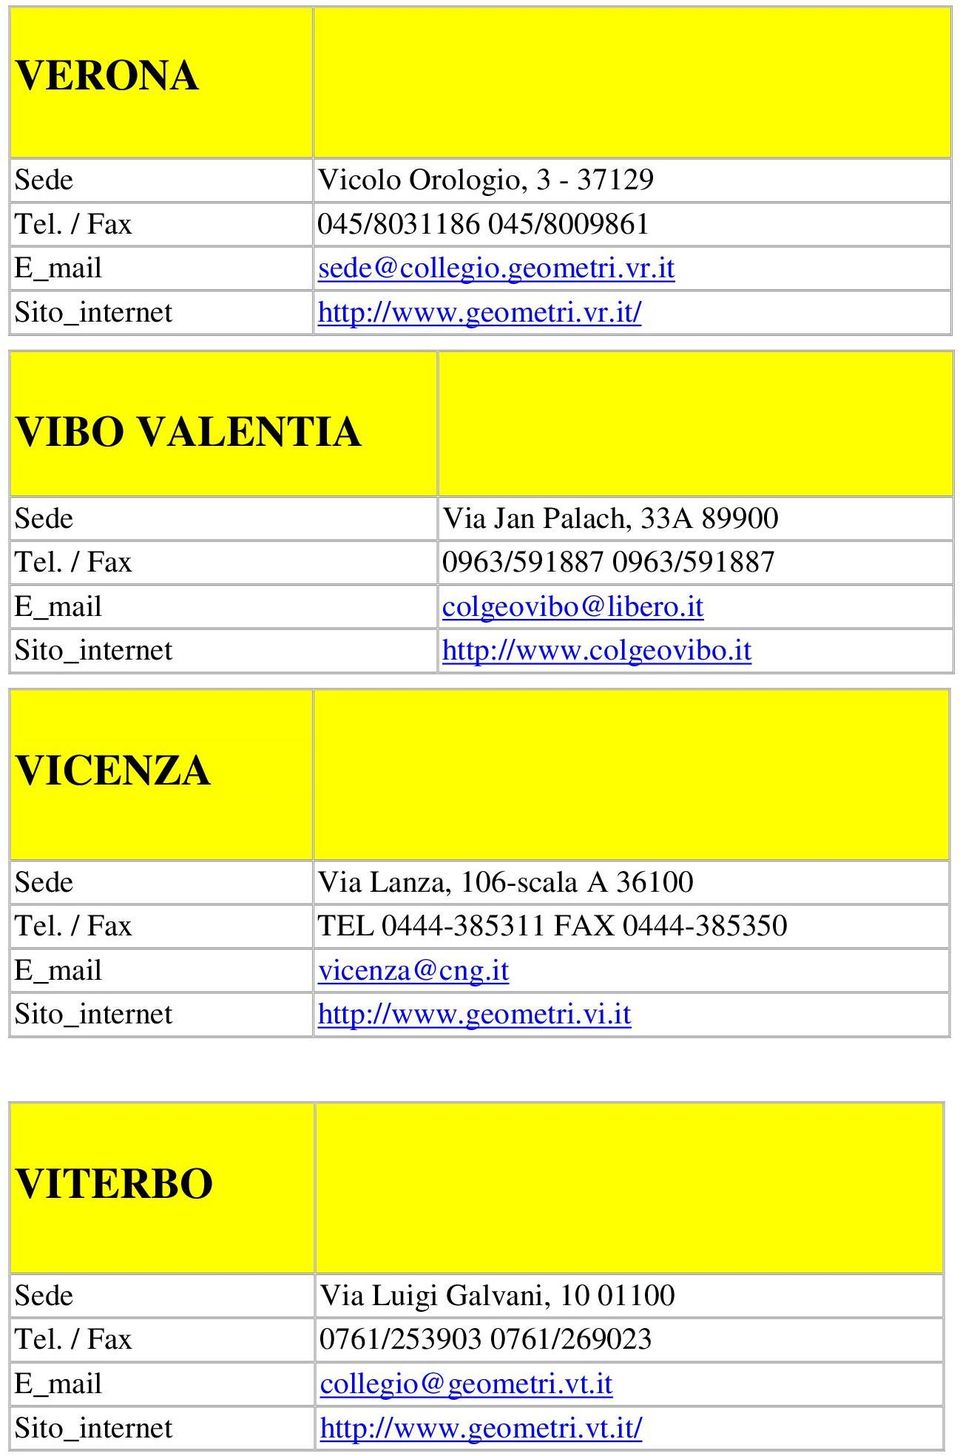 / Fax 0963/591887 0963/591887 colgeovibo@libero.it http://www.colgeovibo.it VICENZA Sede Via Lanza, 106-scala A 36100 Tel.